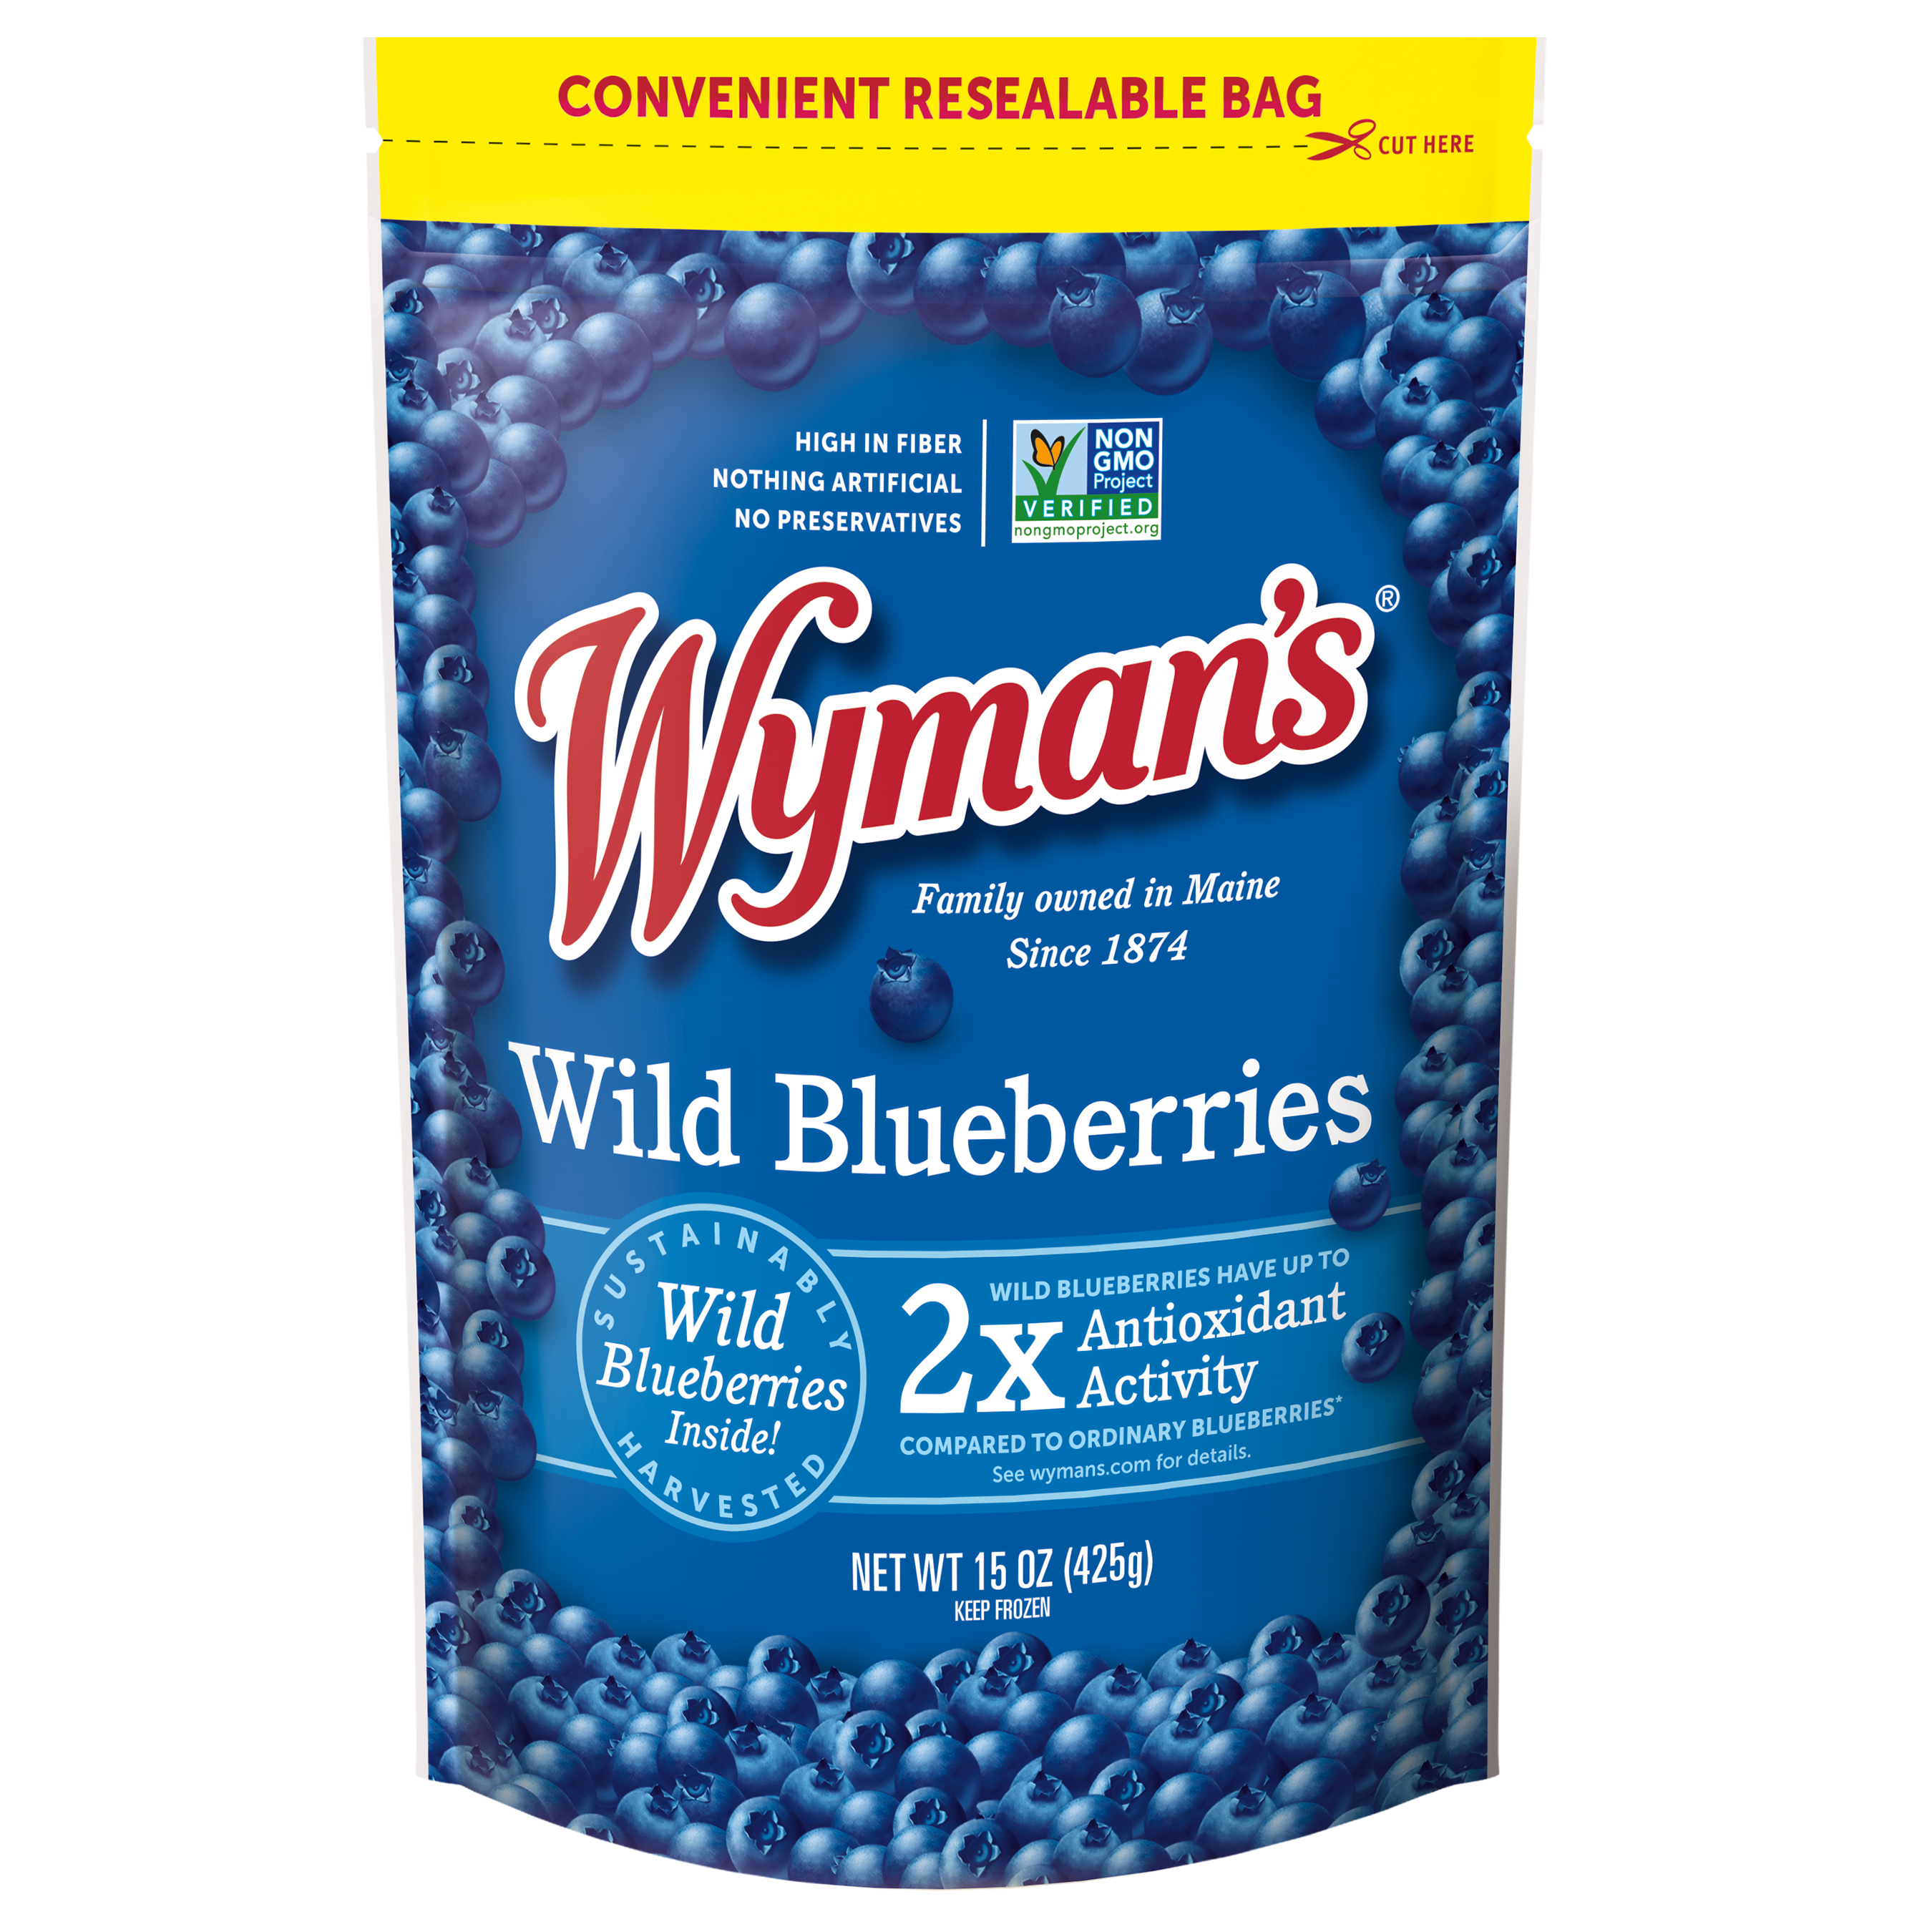 Shop Wyman's Wild Blueberries in a bag.